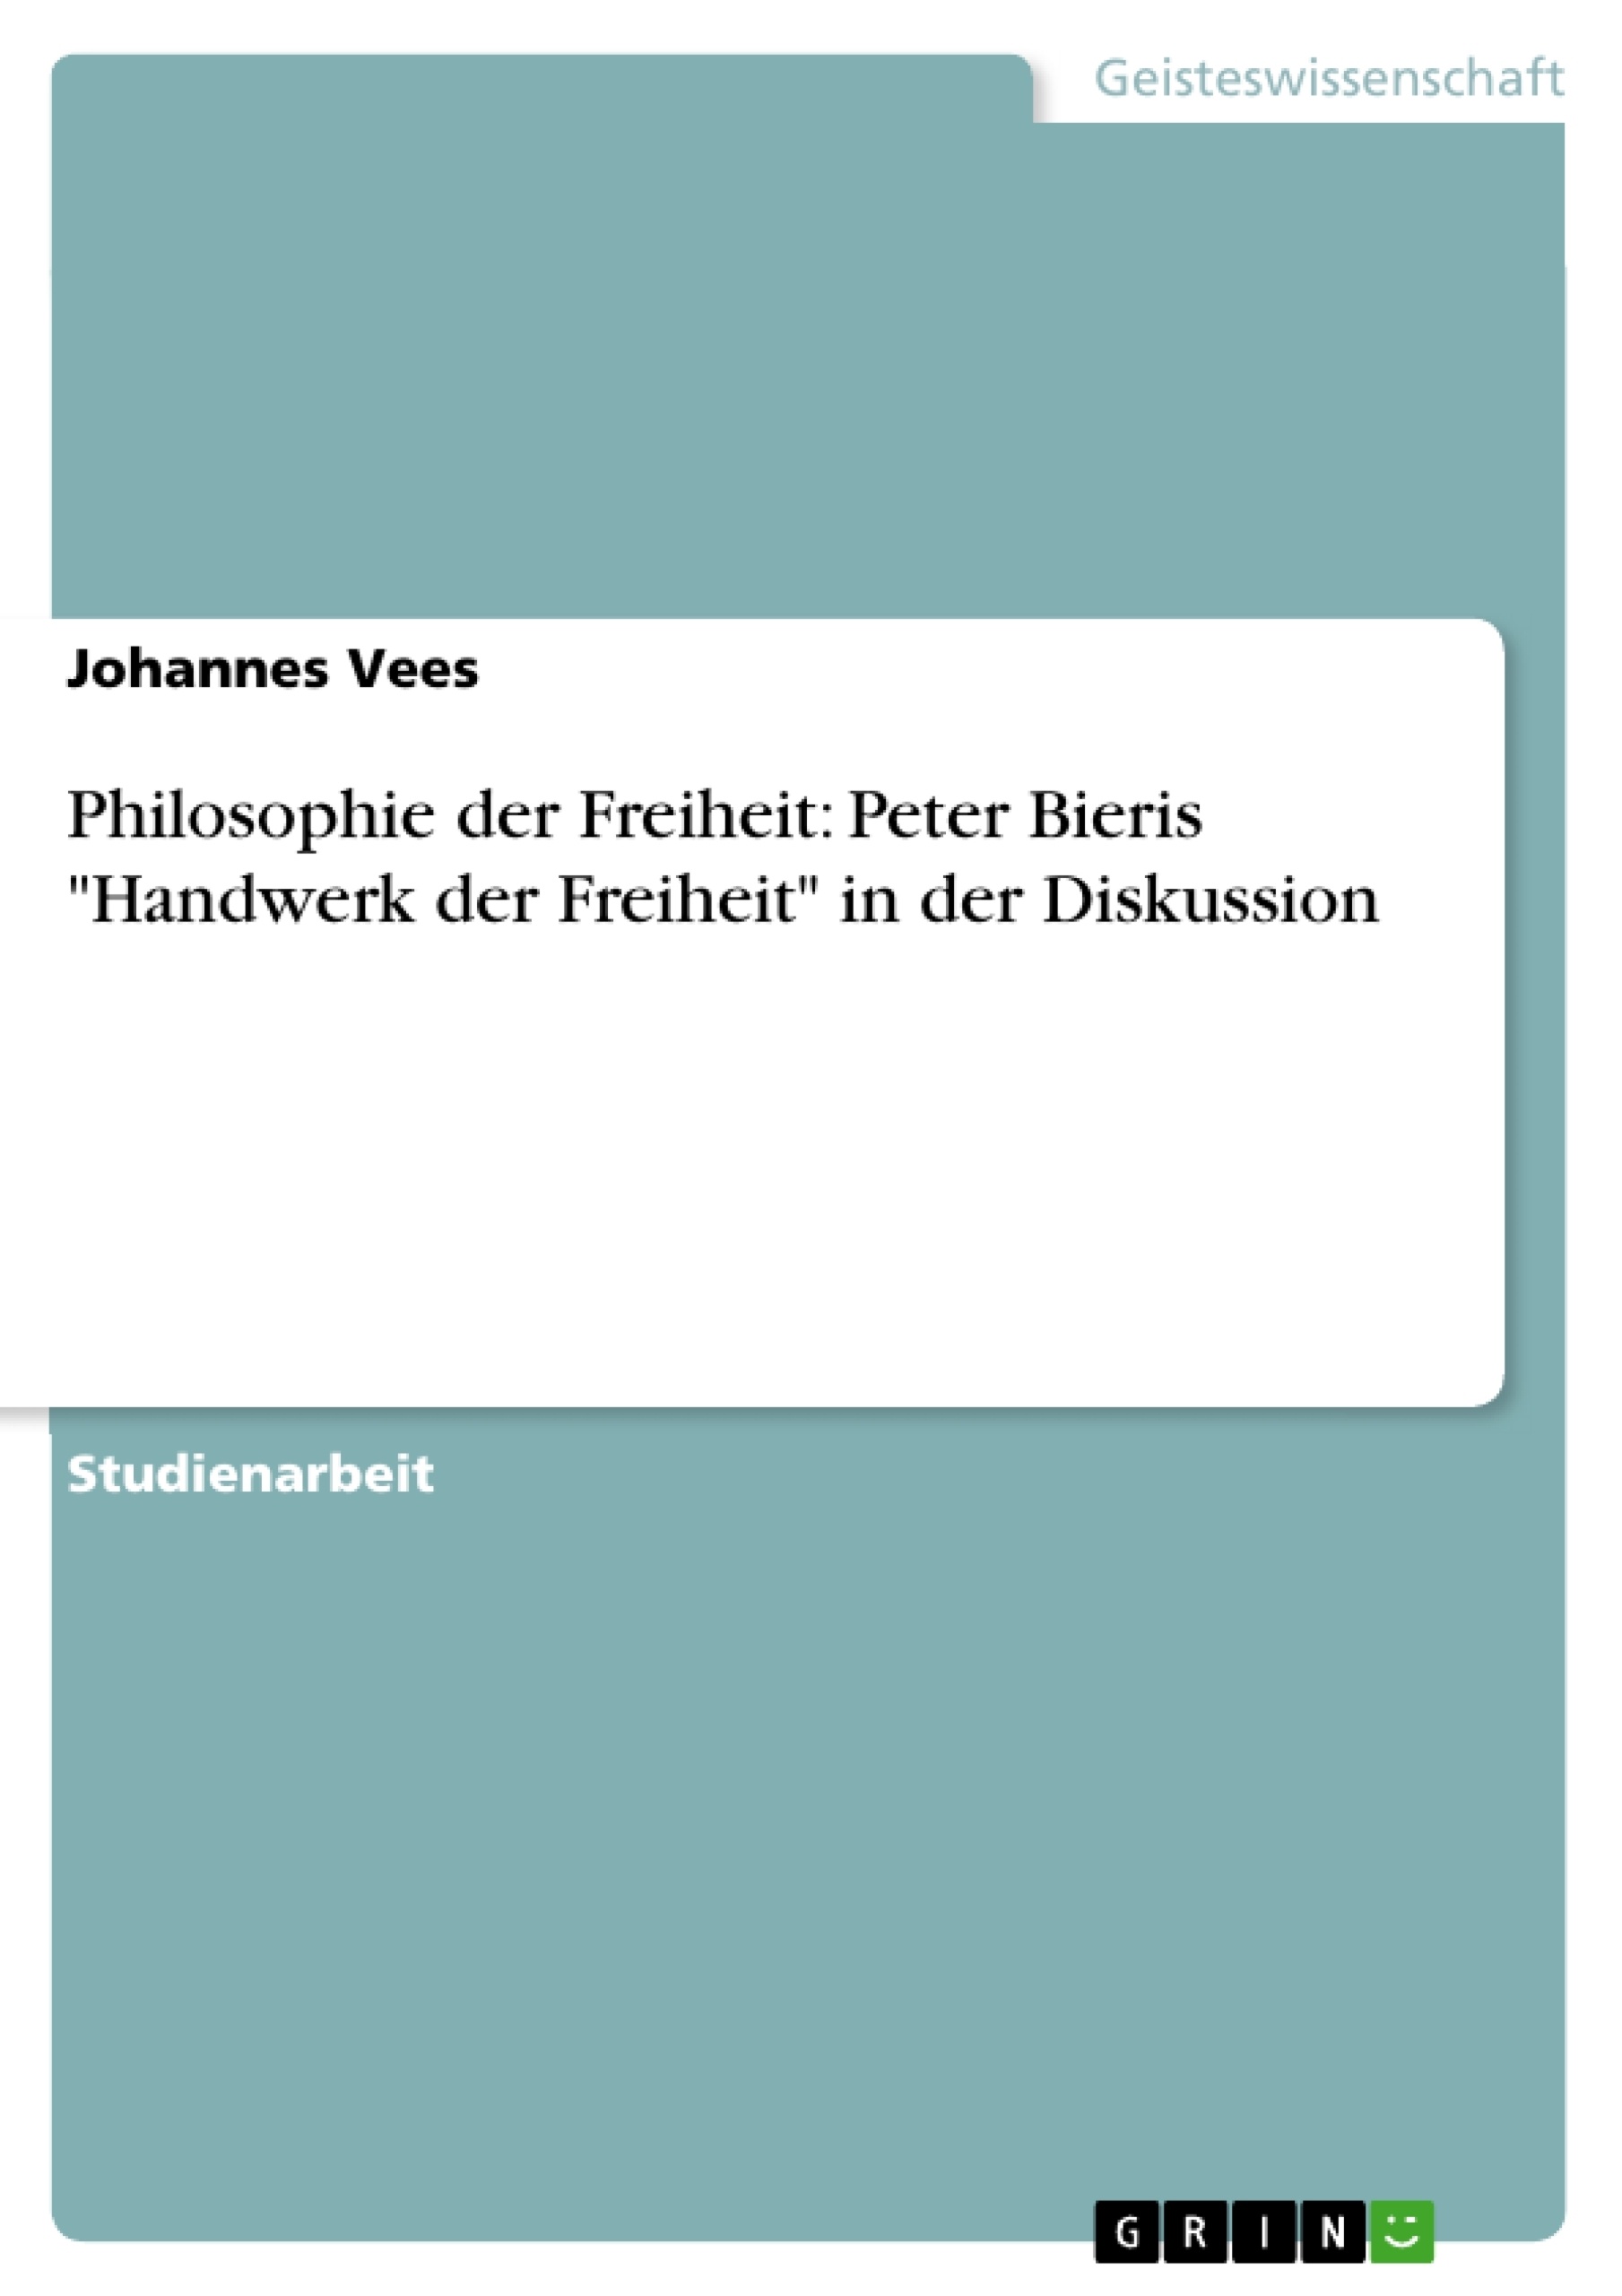 Title: Philosophie der Freiheit: Peter Bieris "Handwerk der Freiheit" in der Diskussion